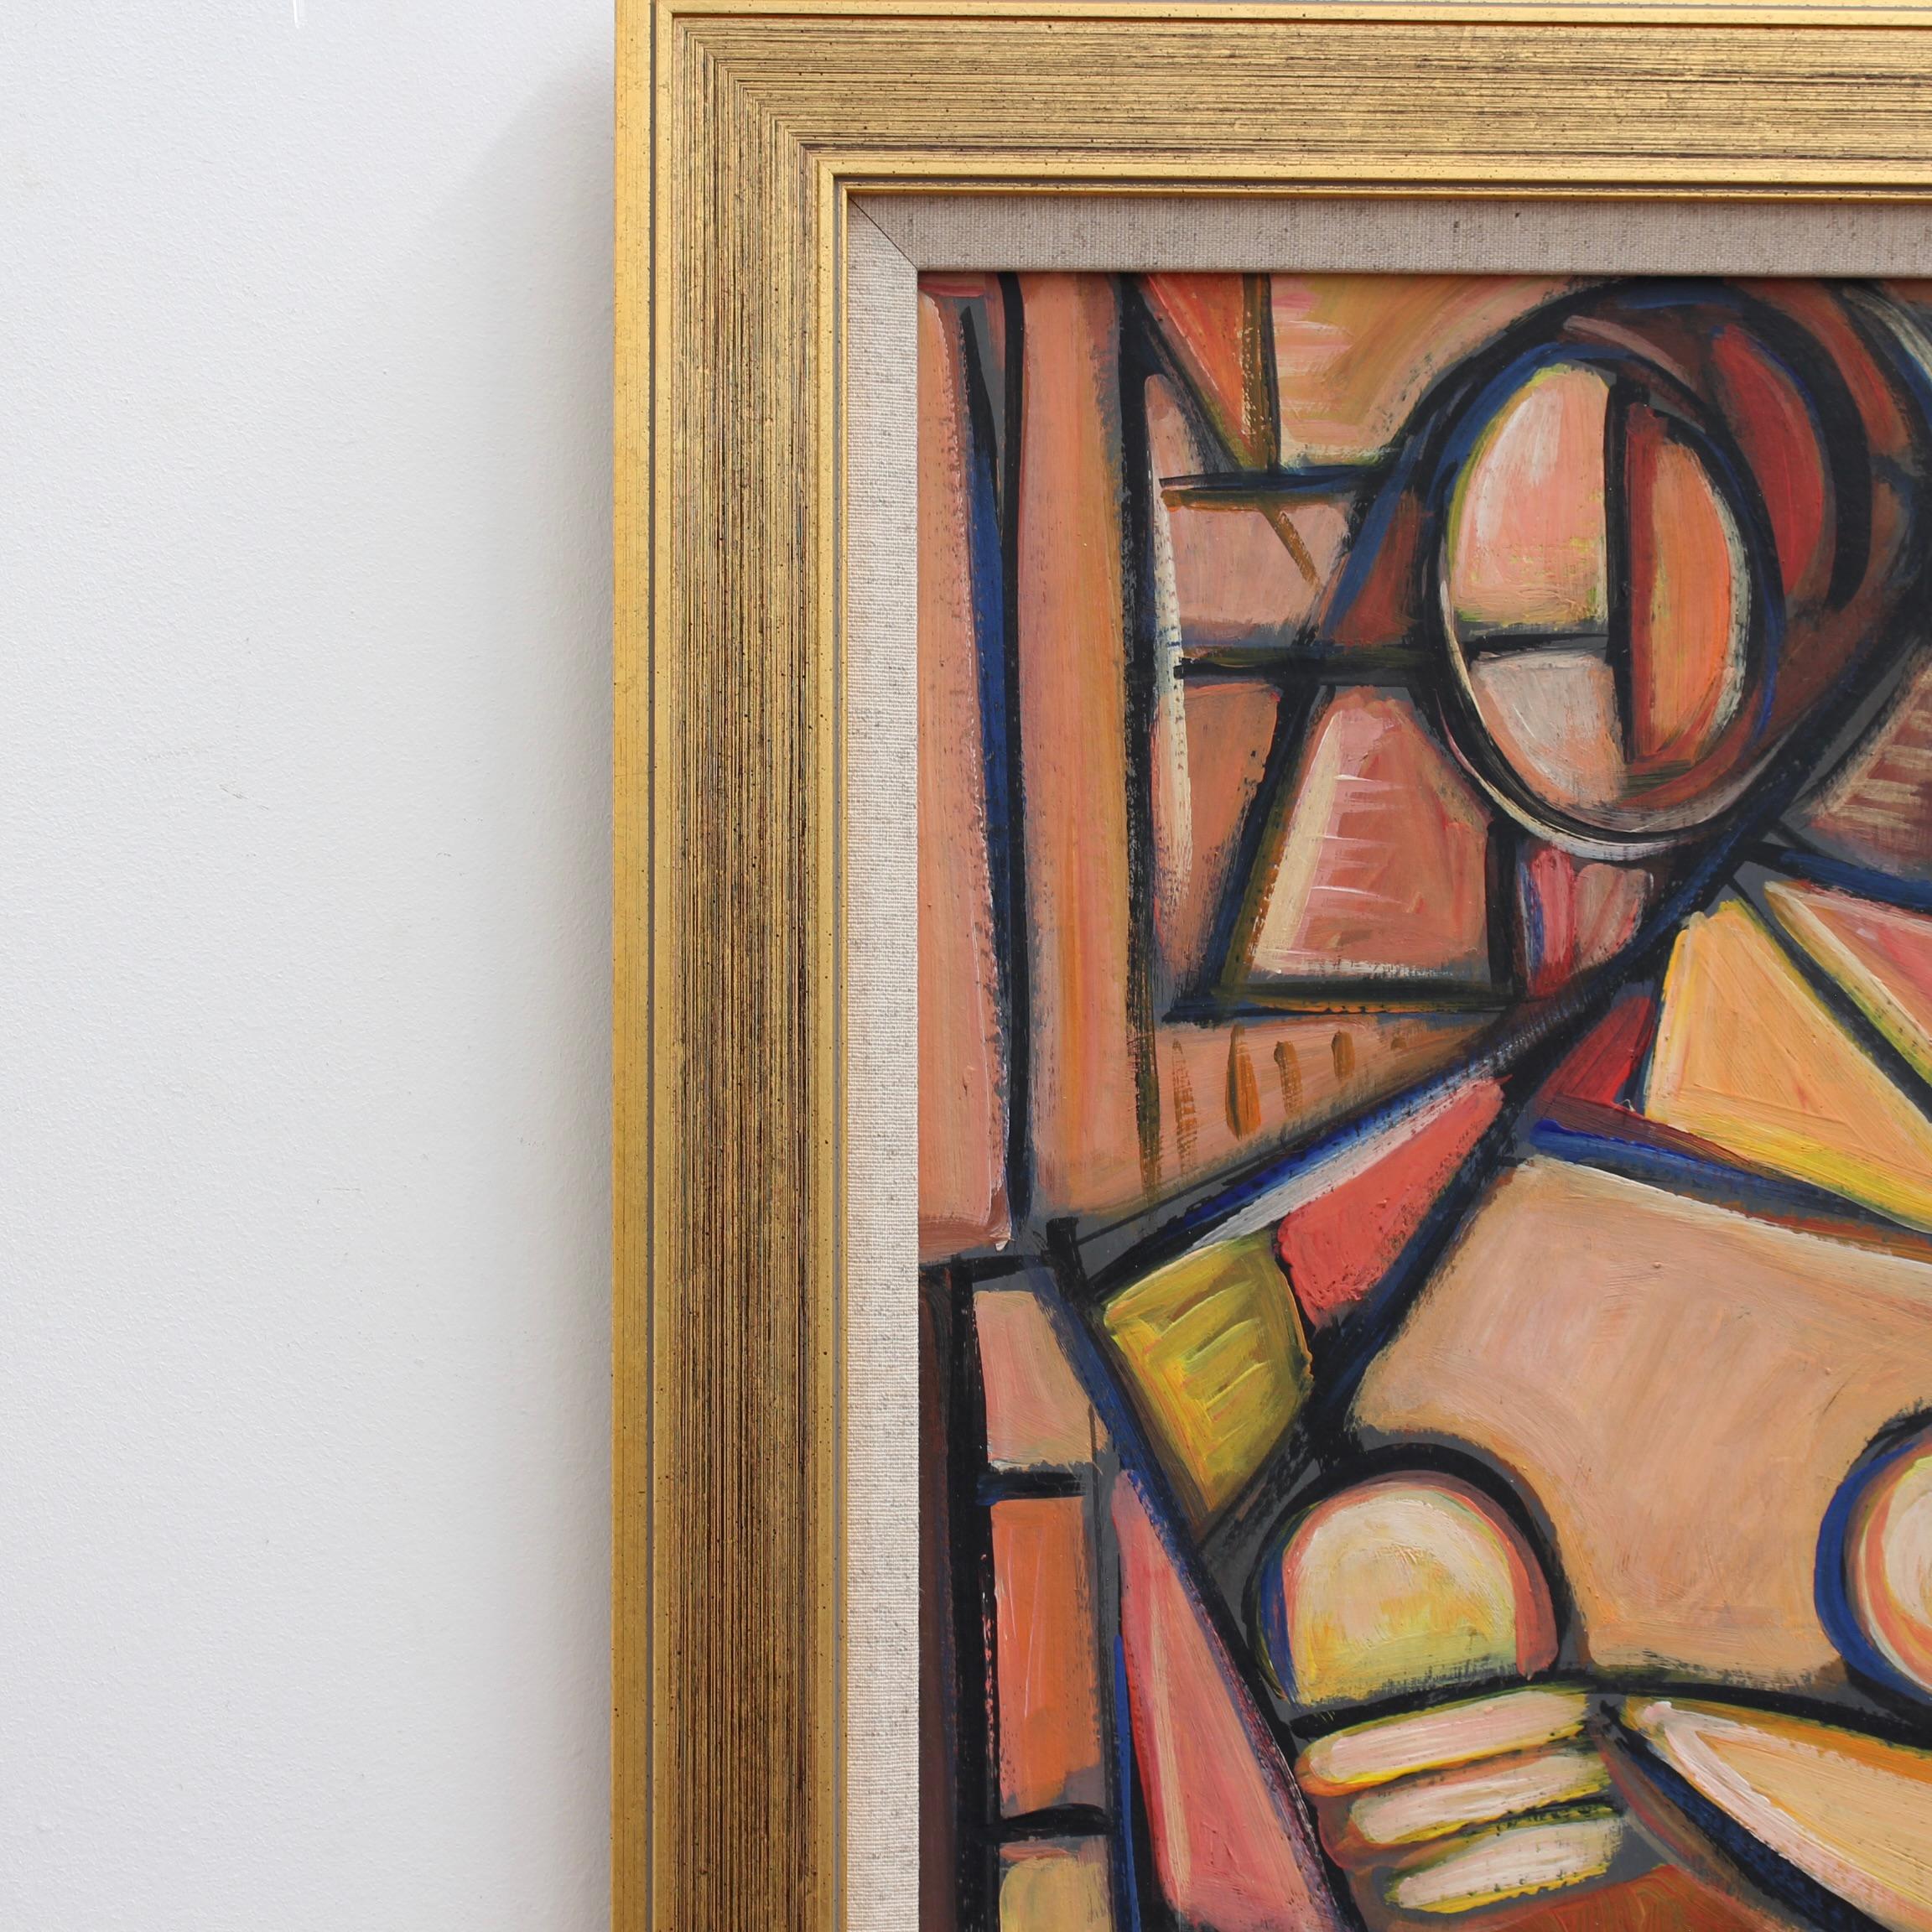 Portrait of a Cubist Woman - Brown Portrait Painting by STM